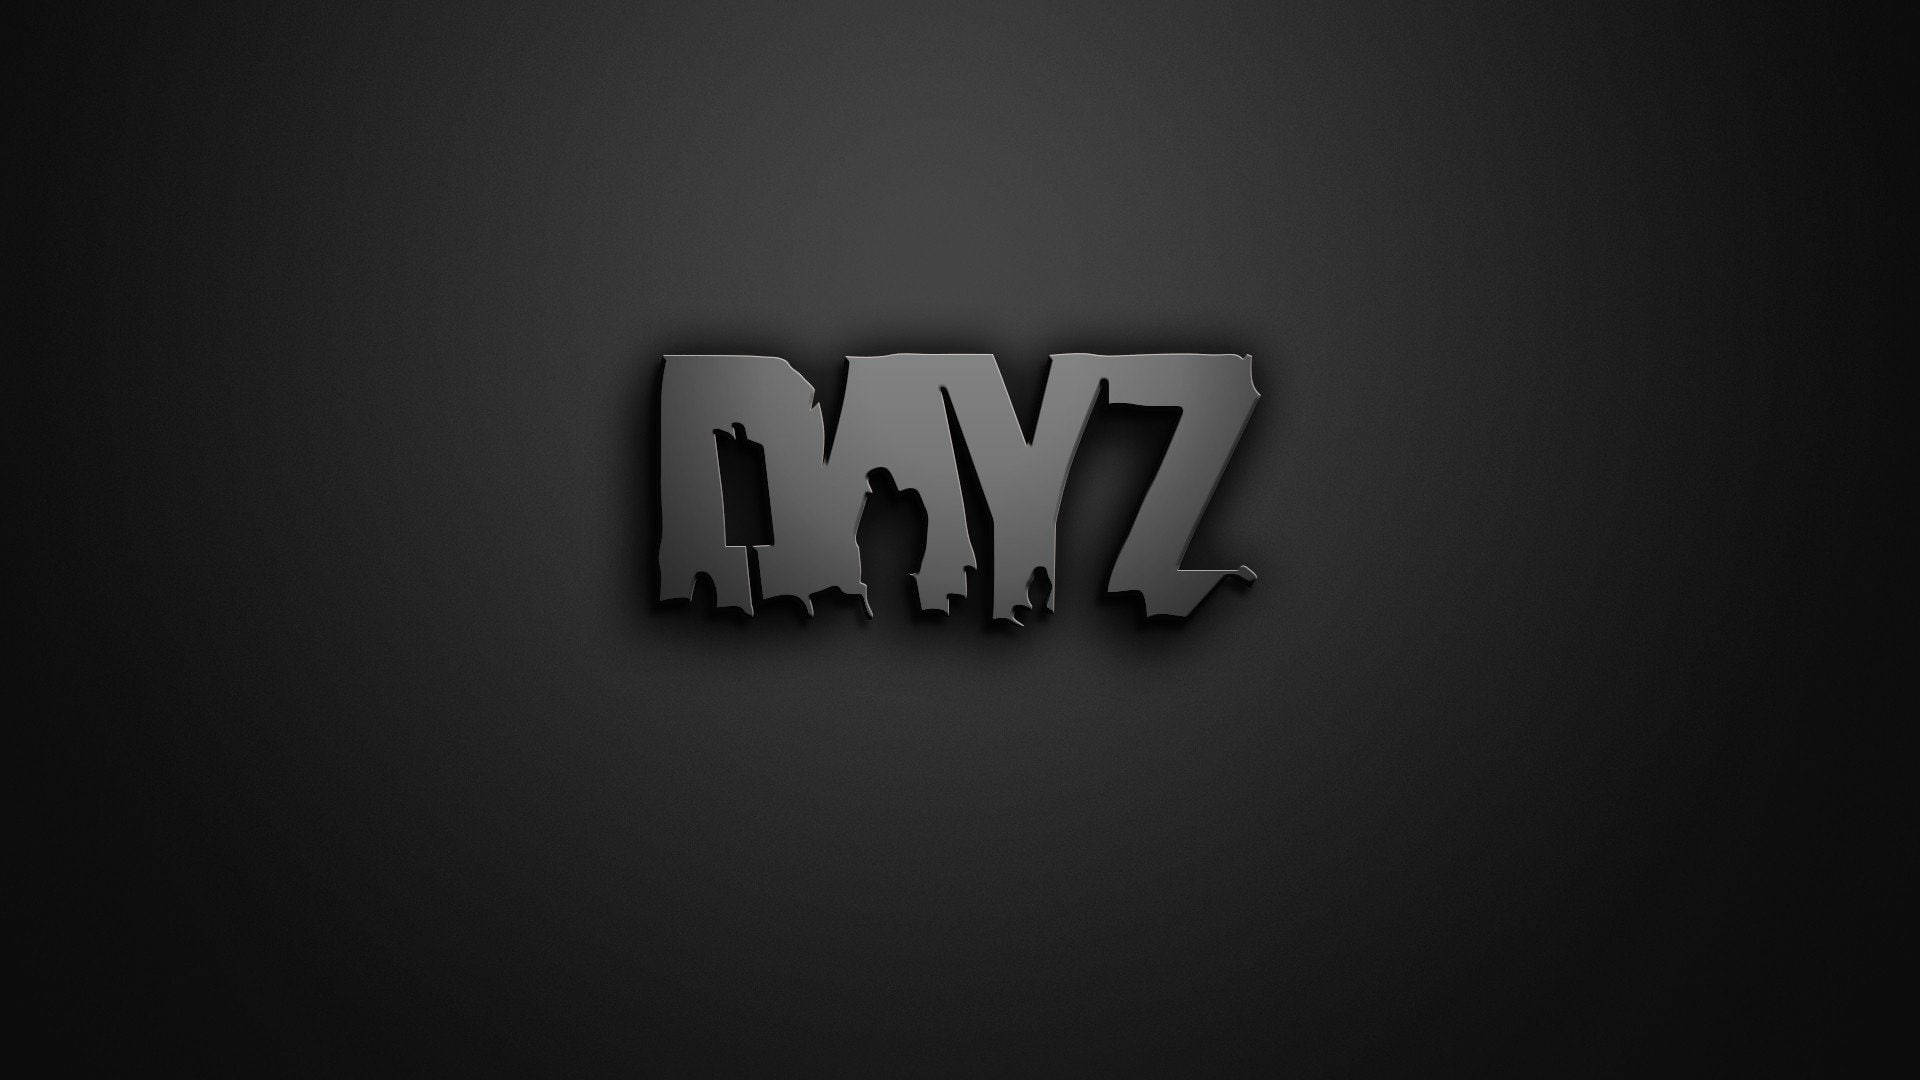 Gray Dayz Desktop Wordmark